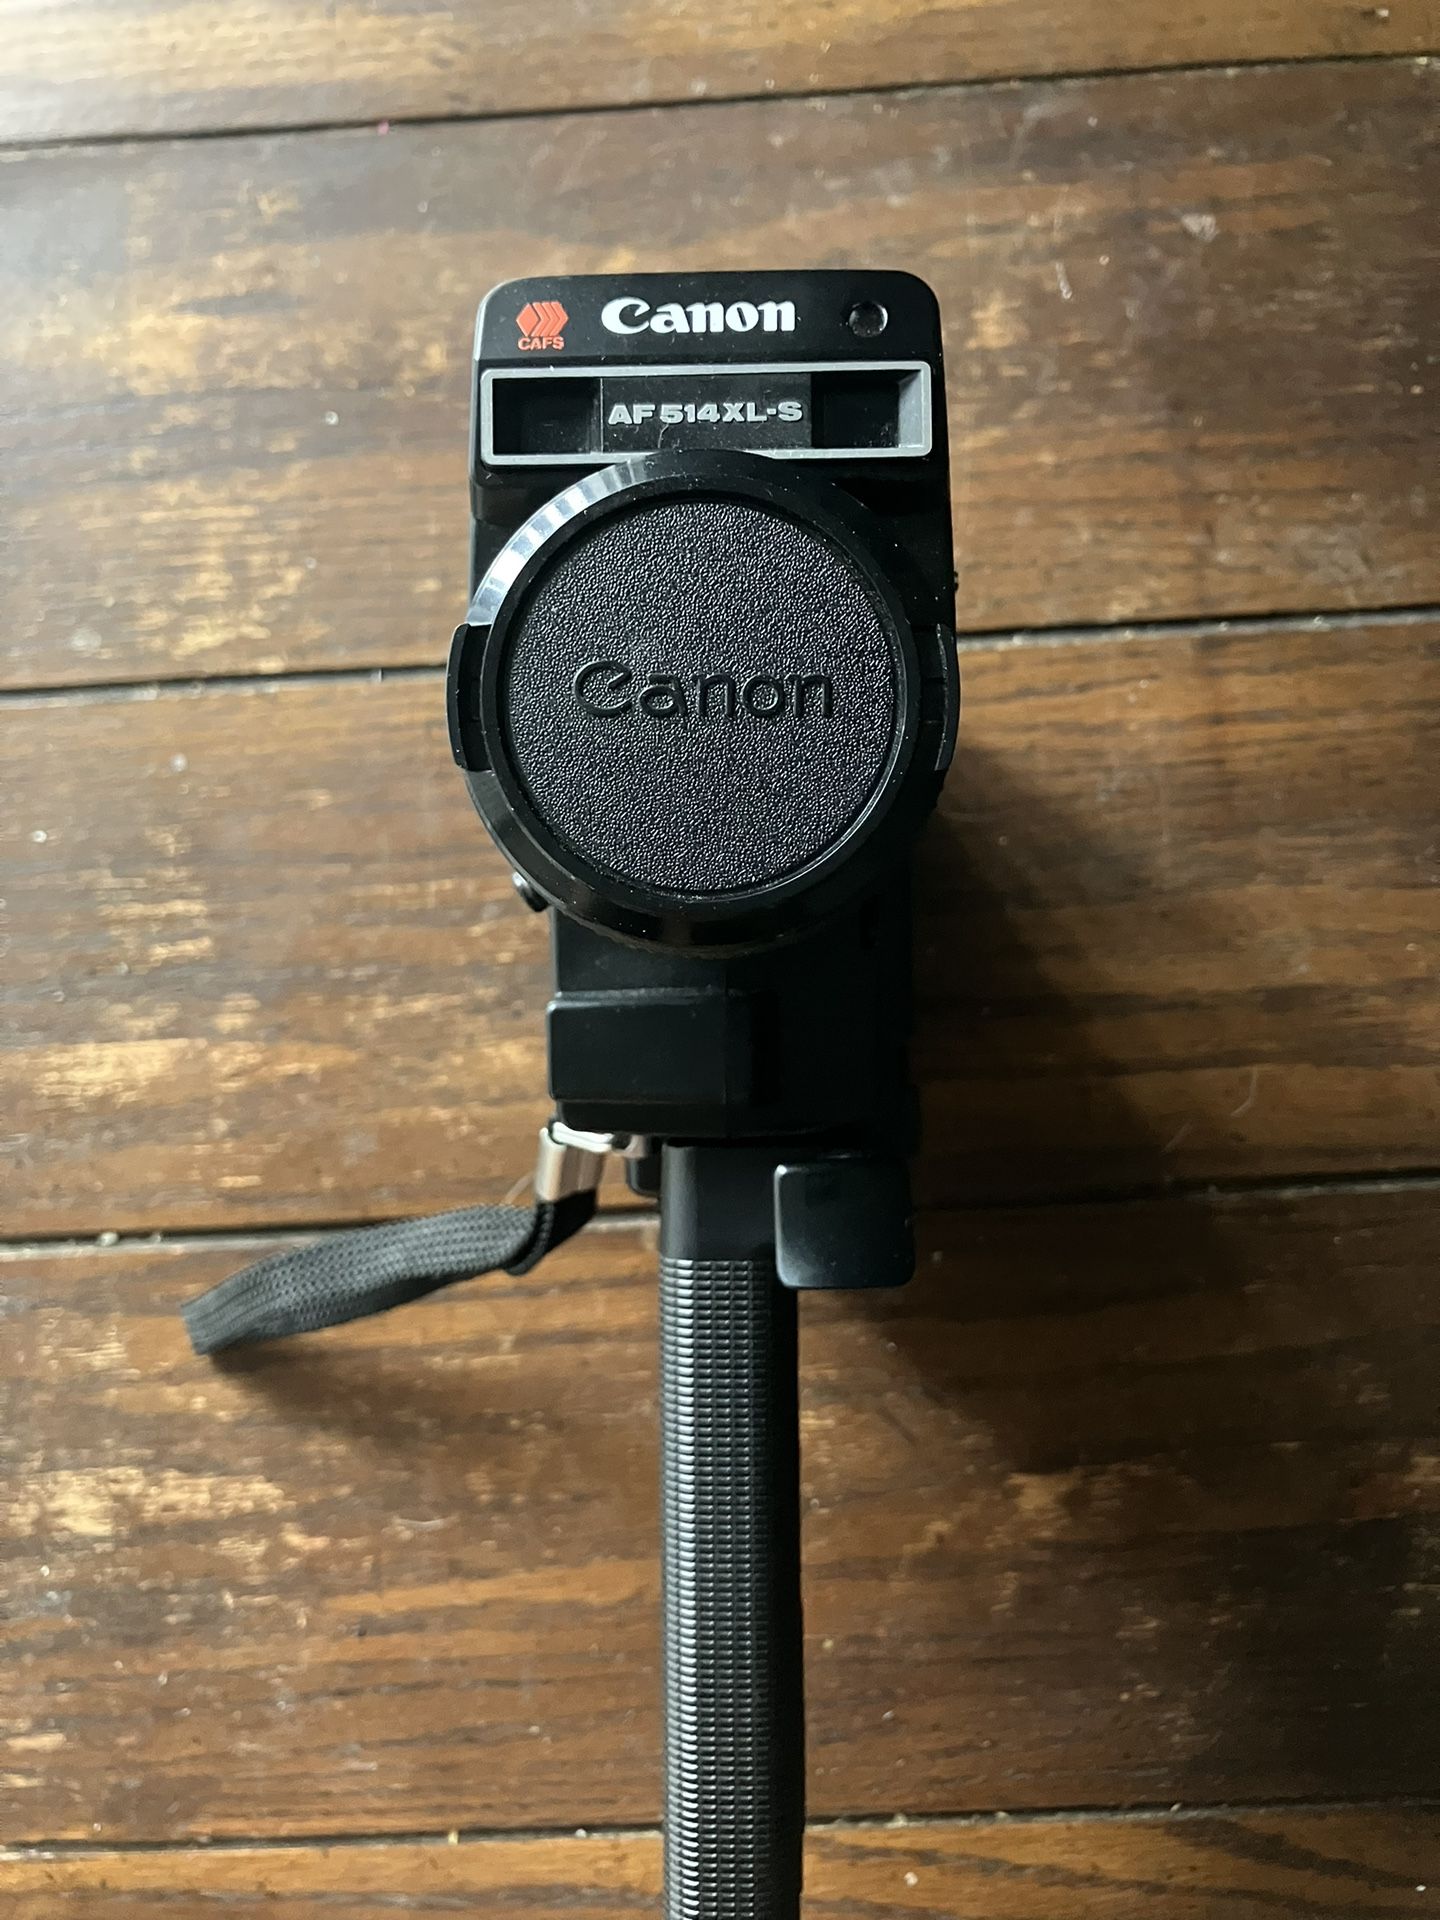 Classic Canon Film Movie Camera